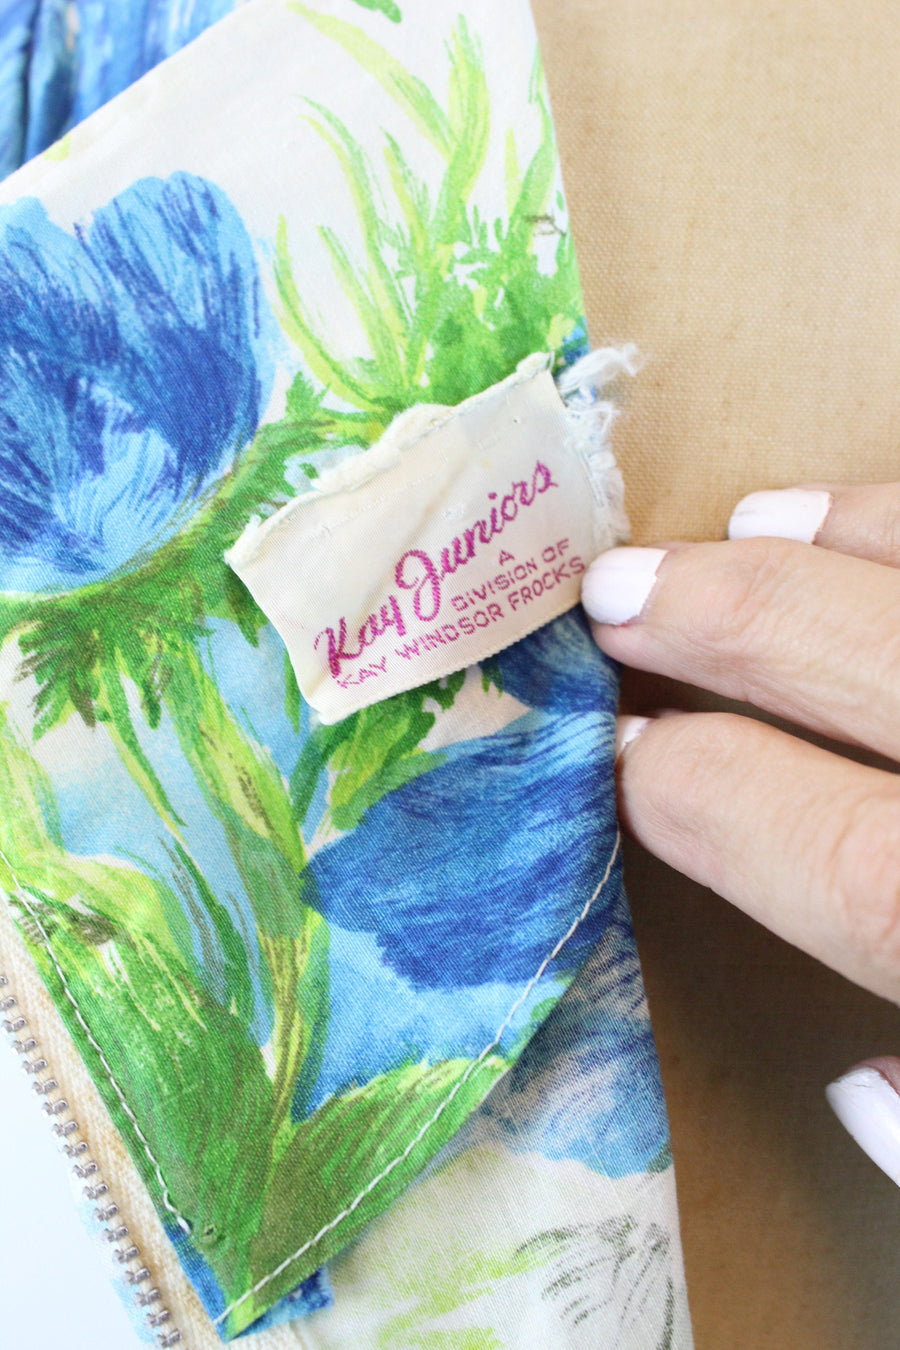 1950s BLUE ROSE cotton print full skirt dress xs | new summer